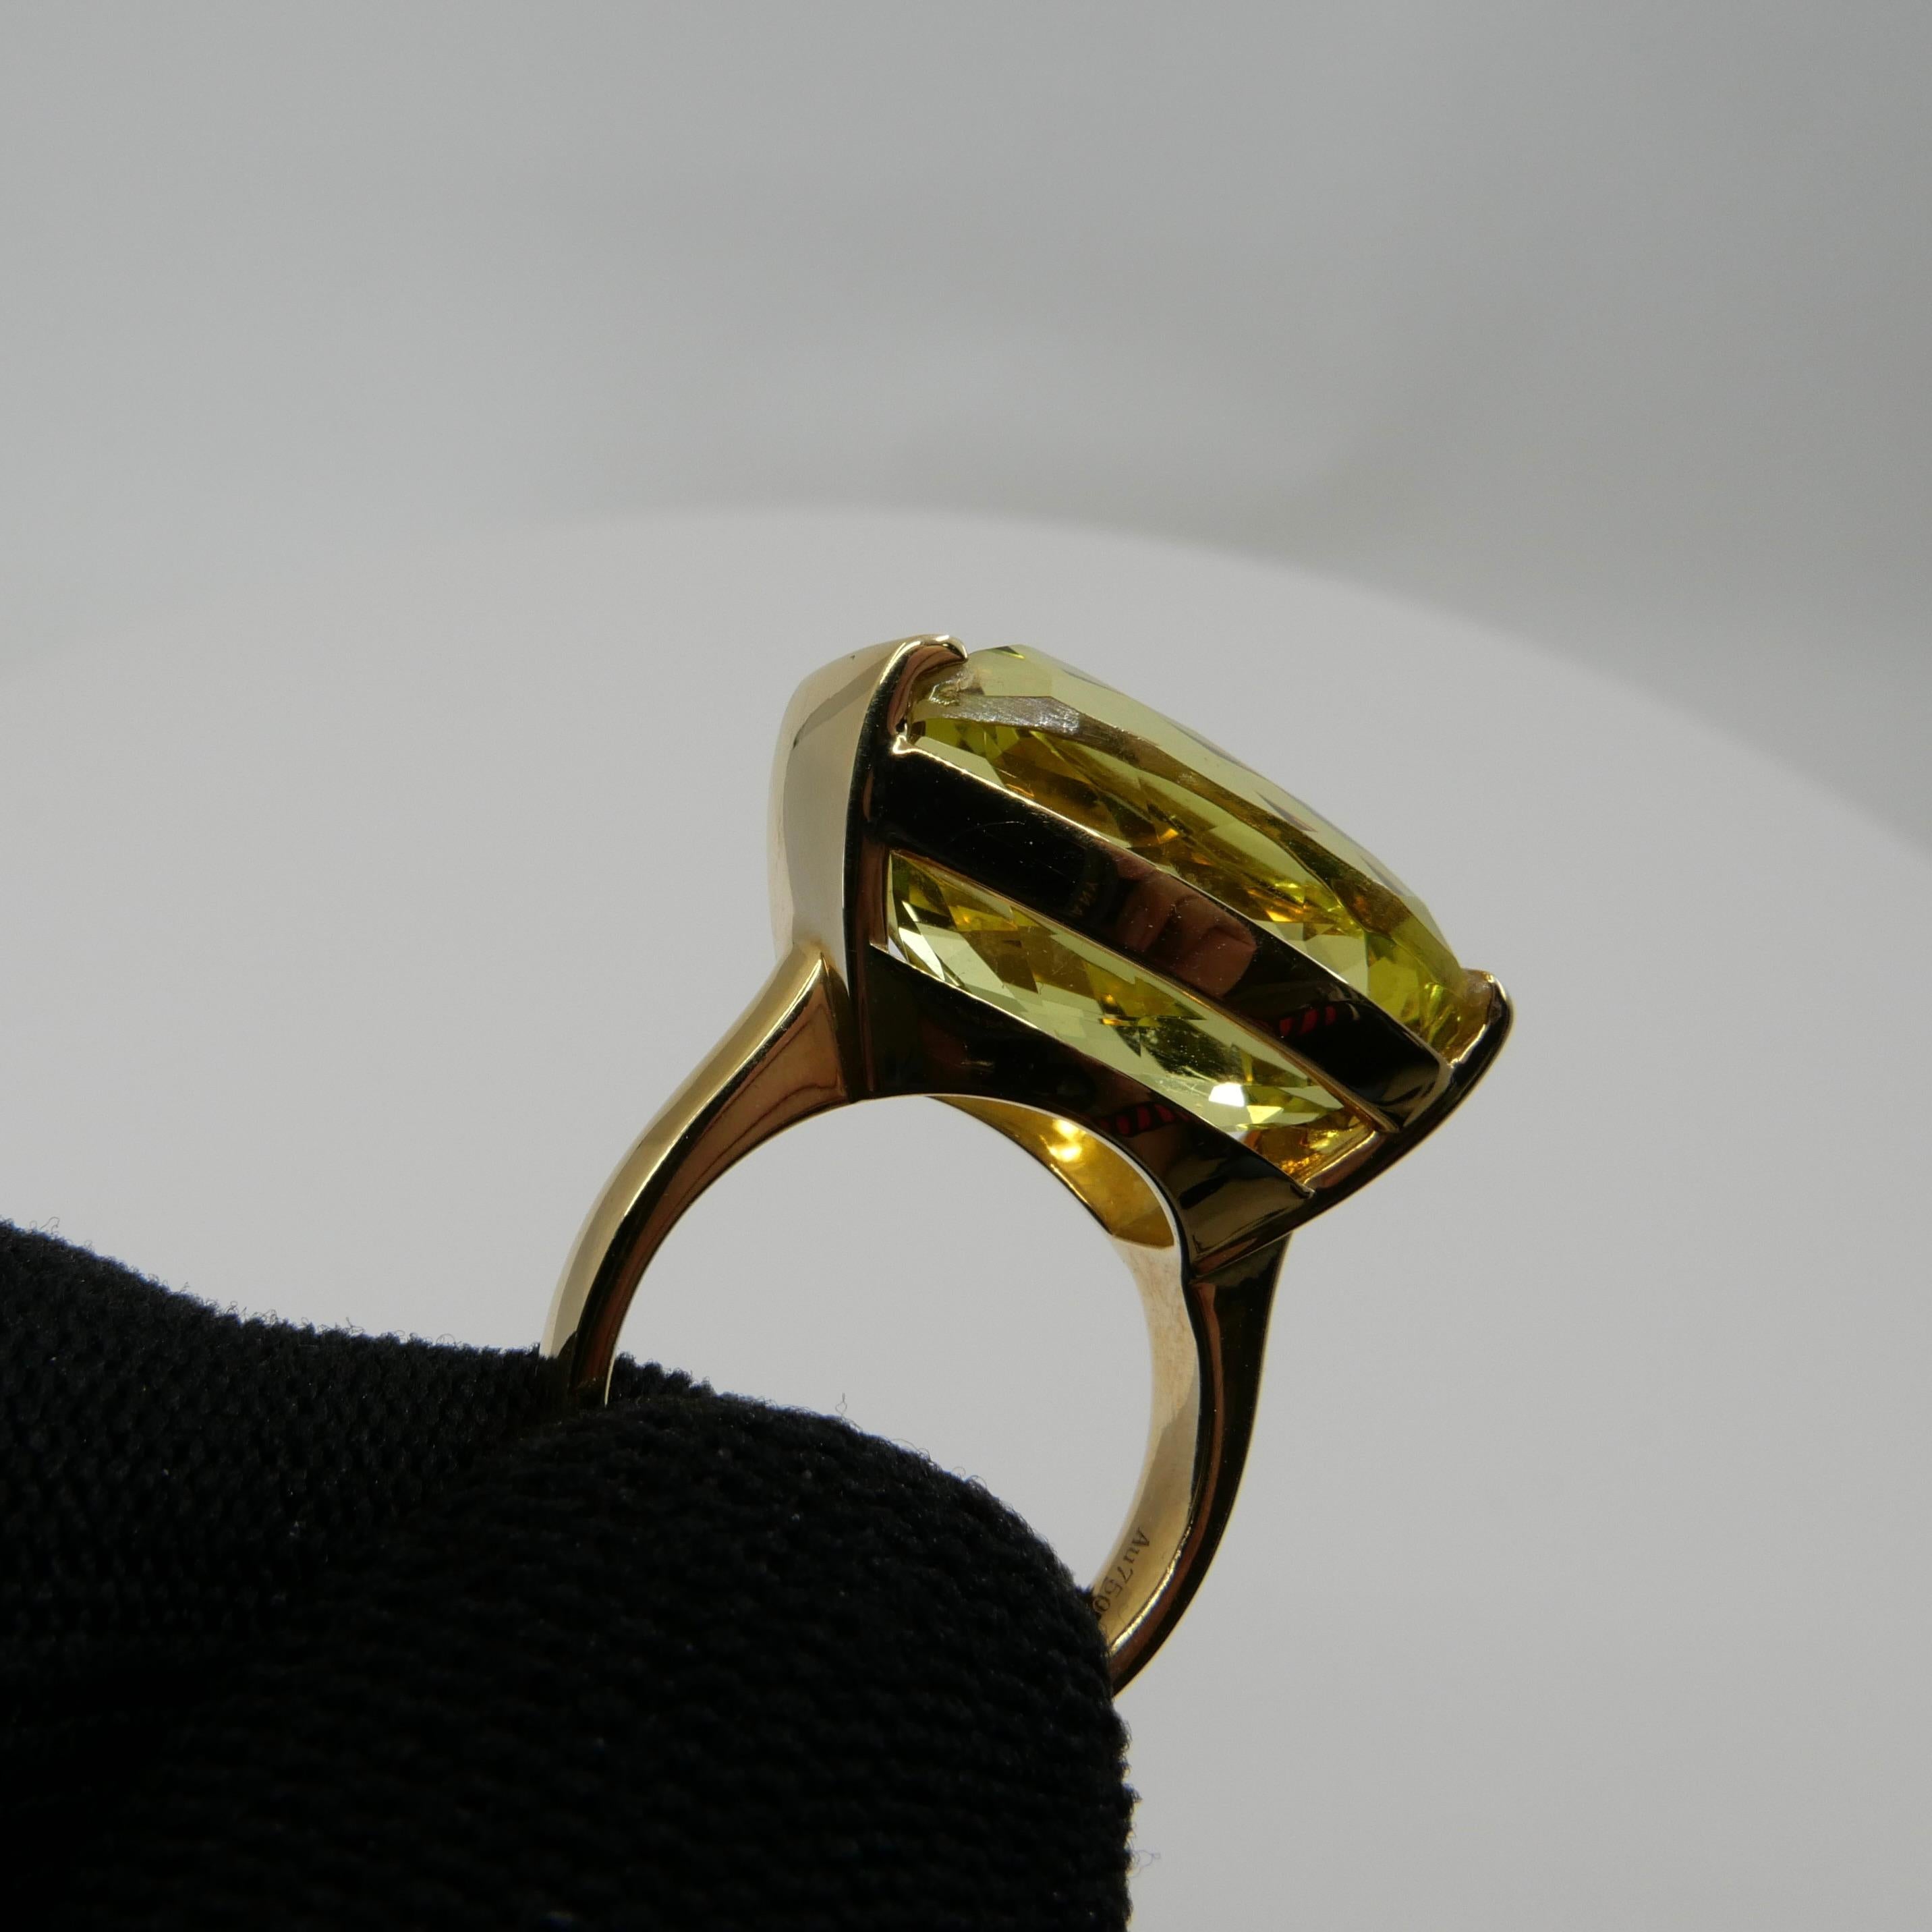 16.16 Carat Lemon Quartz Statement Cocktail Ring, Contemporary Design For Sale 6